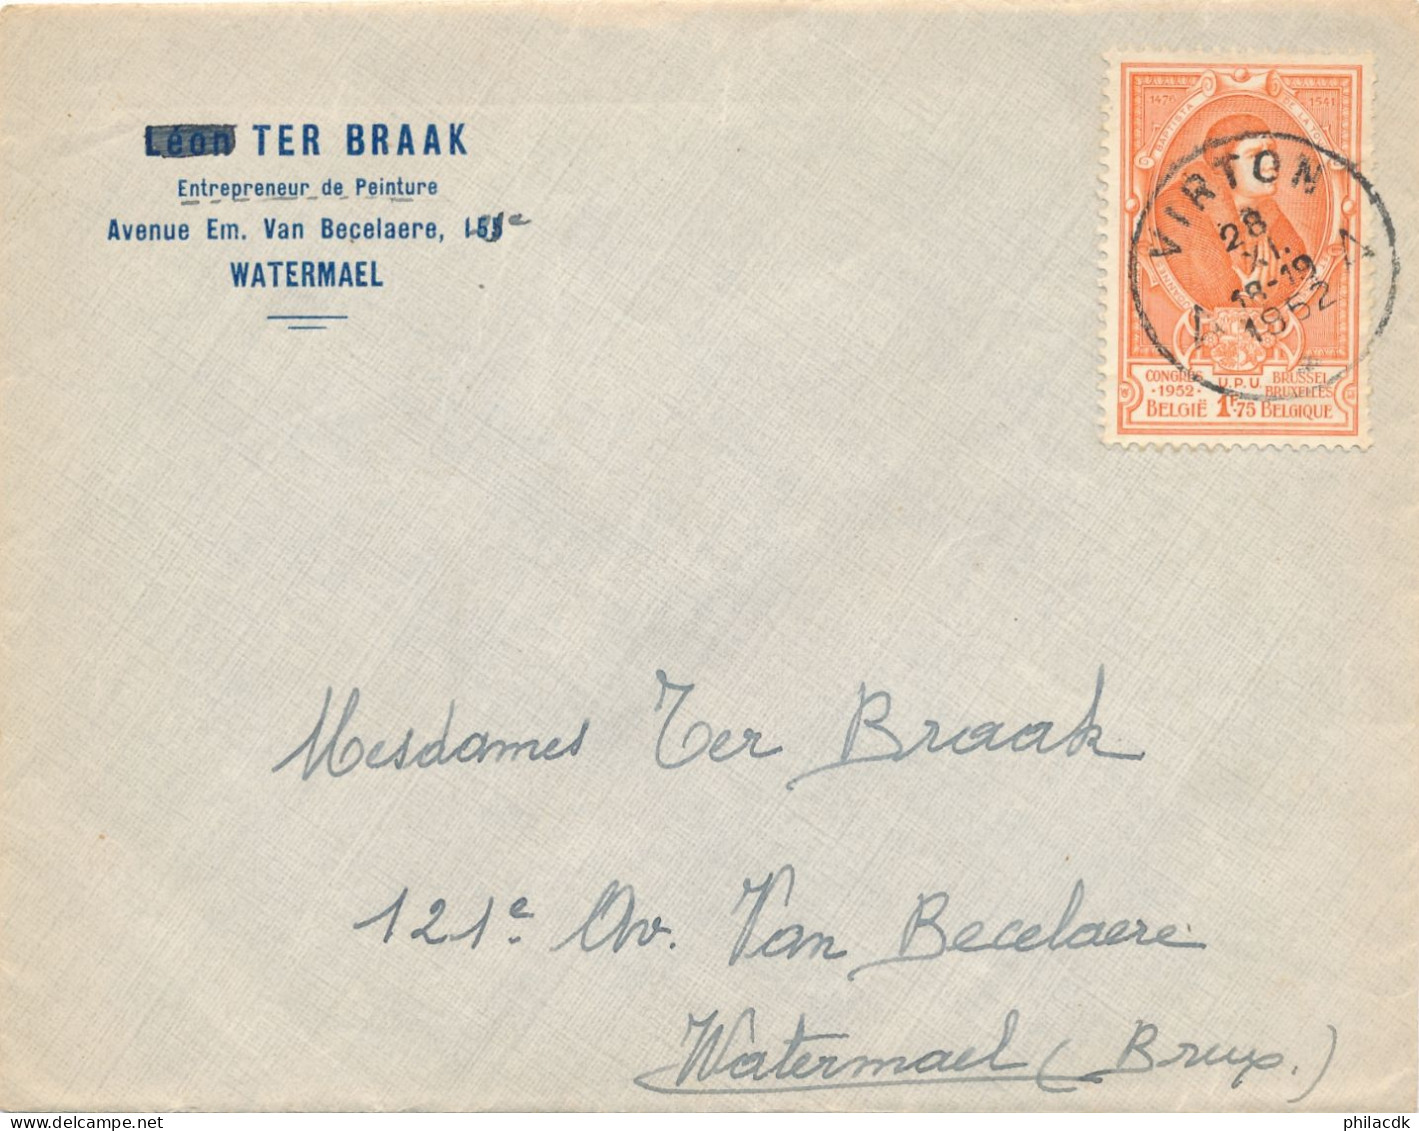 BELGIQUE - TIMBRE SUR ENVELOPPE OBLITEREE AVEC CAD VIRTON DU 28 NOVEMBRE 1952 - Briefe U. Dokumente